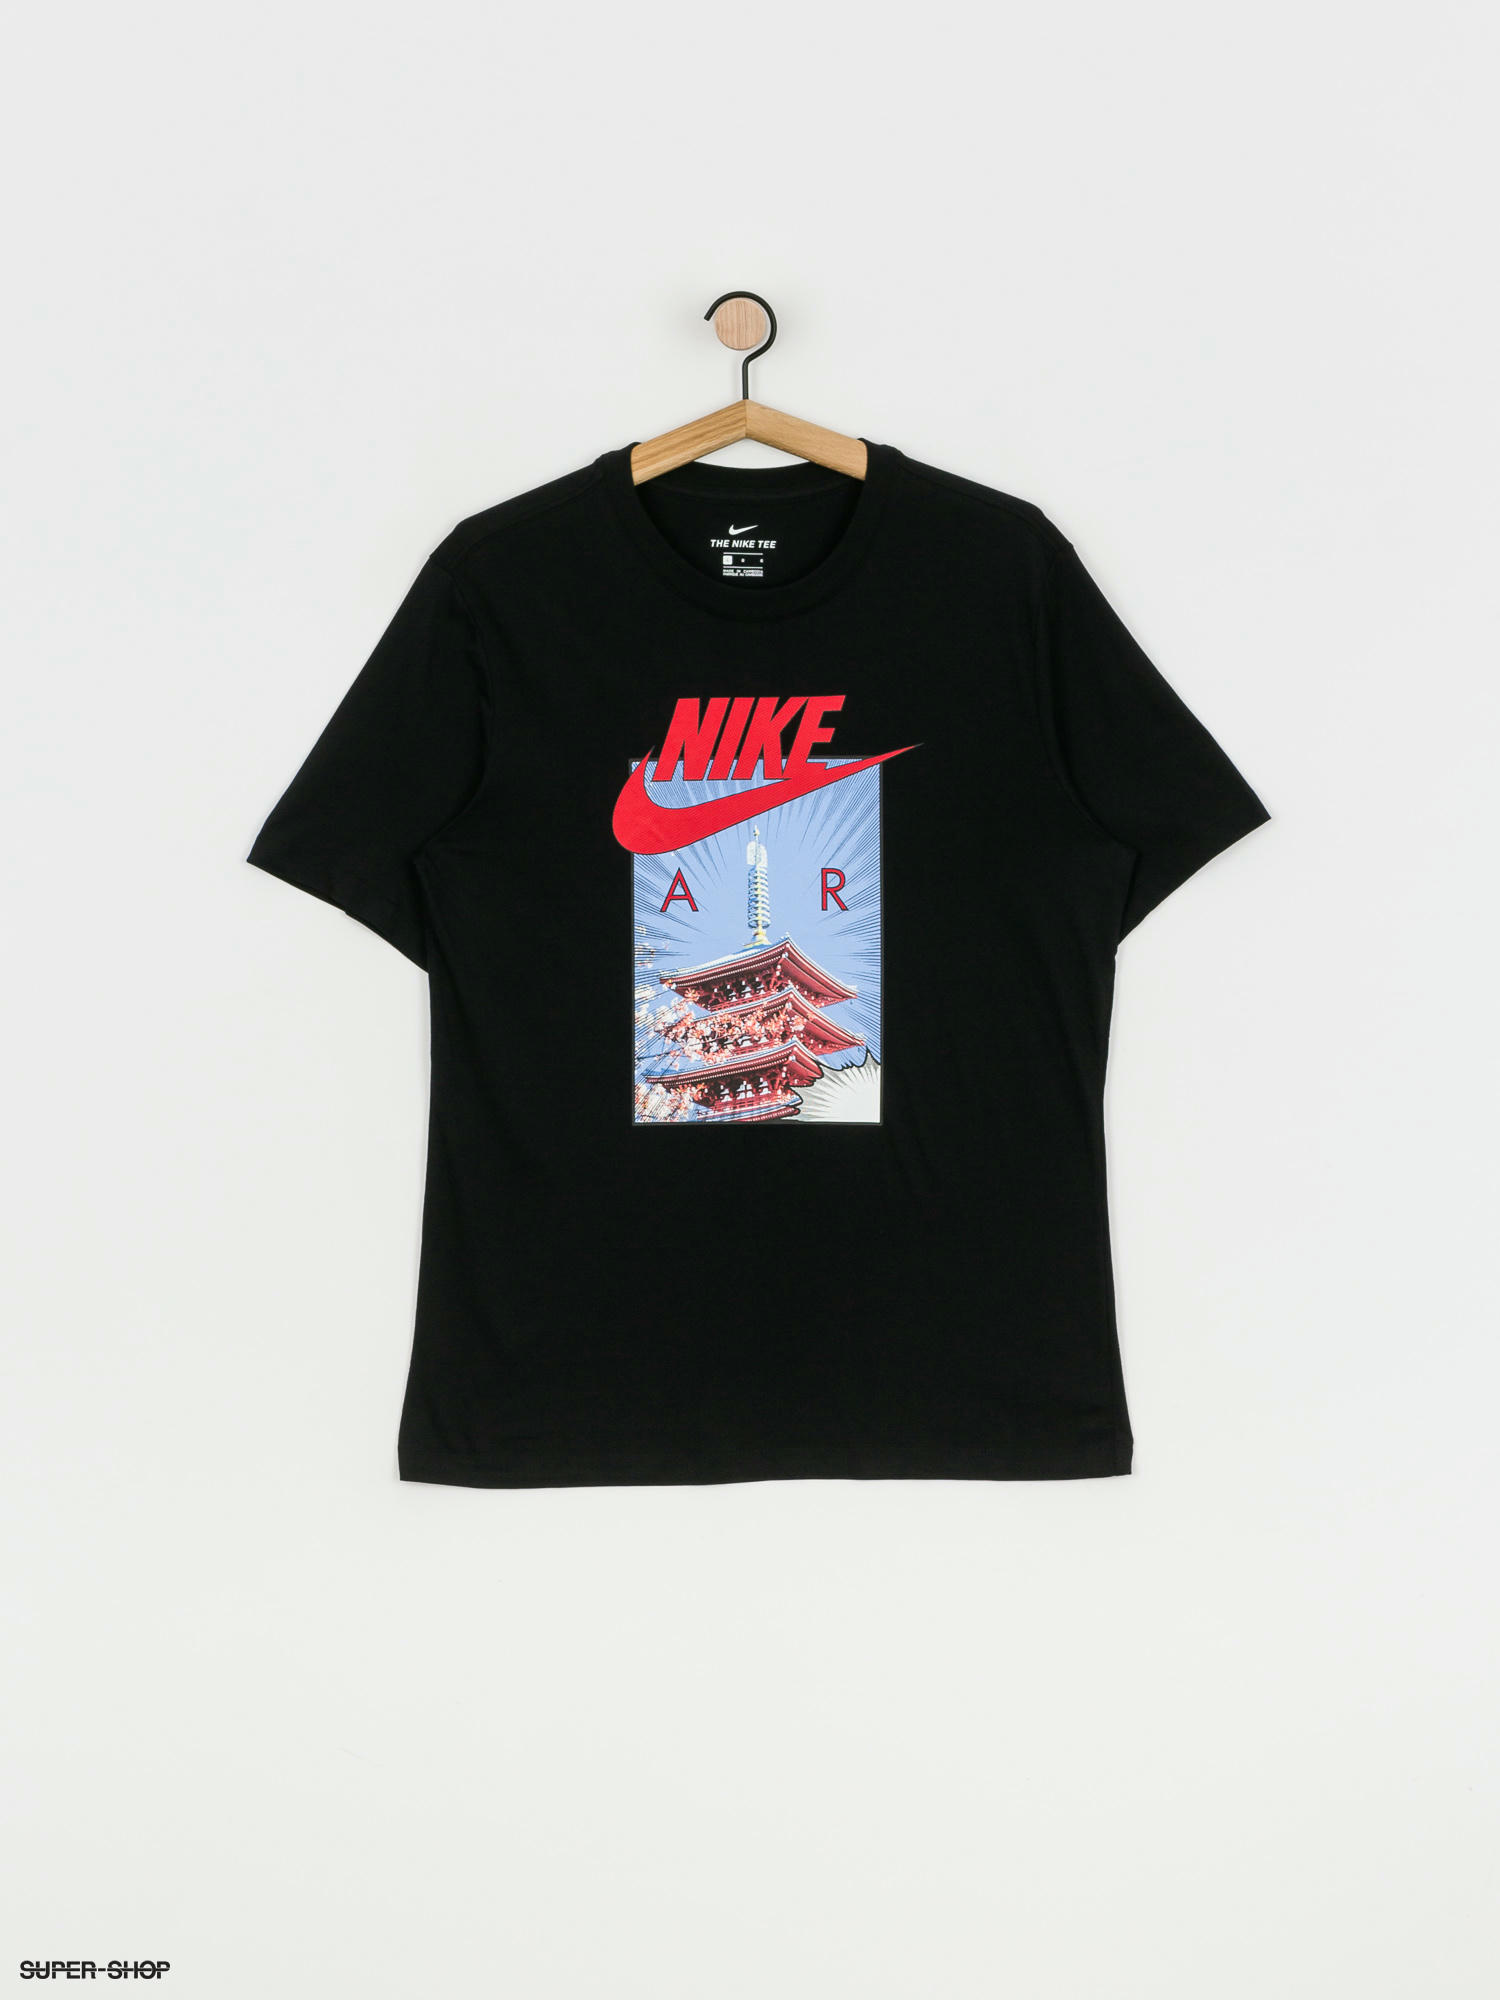 Nike Air Photo T-shirt